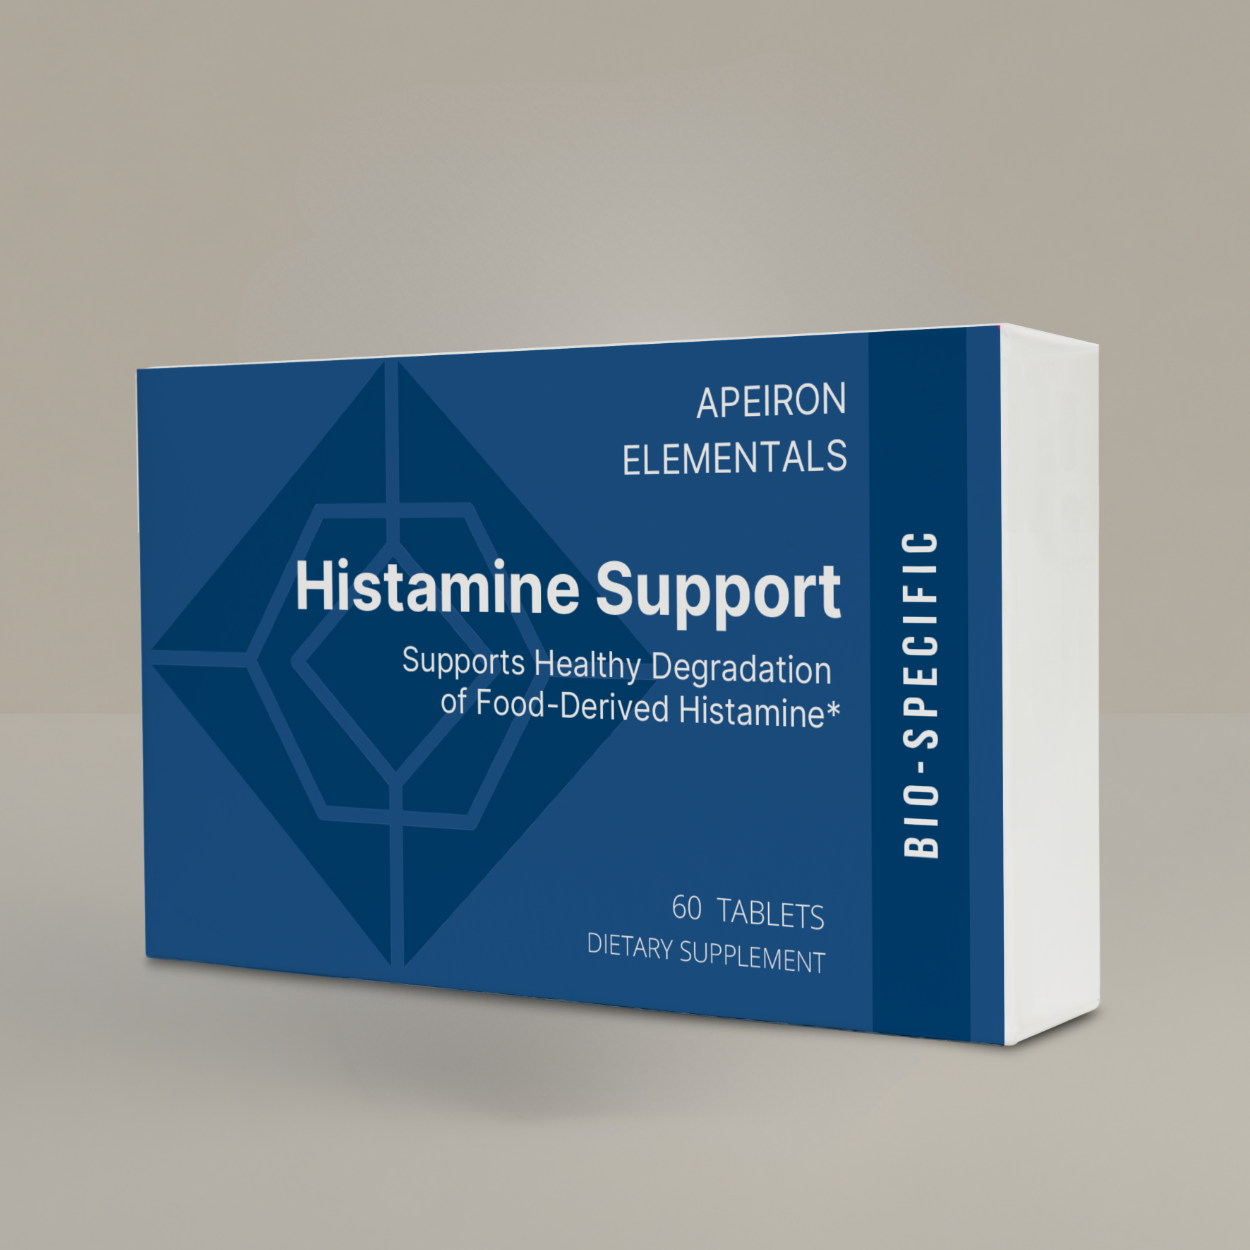 Staff: Histamine Support